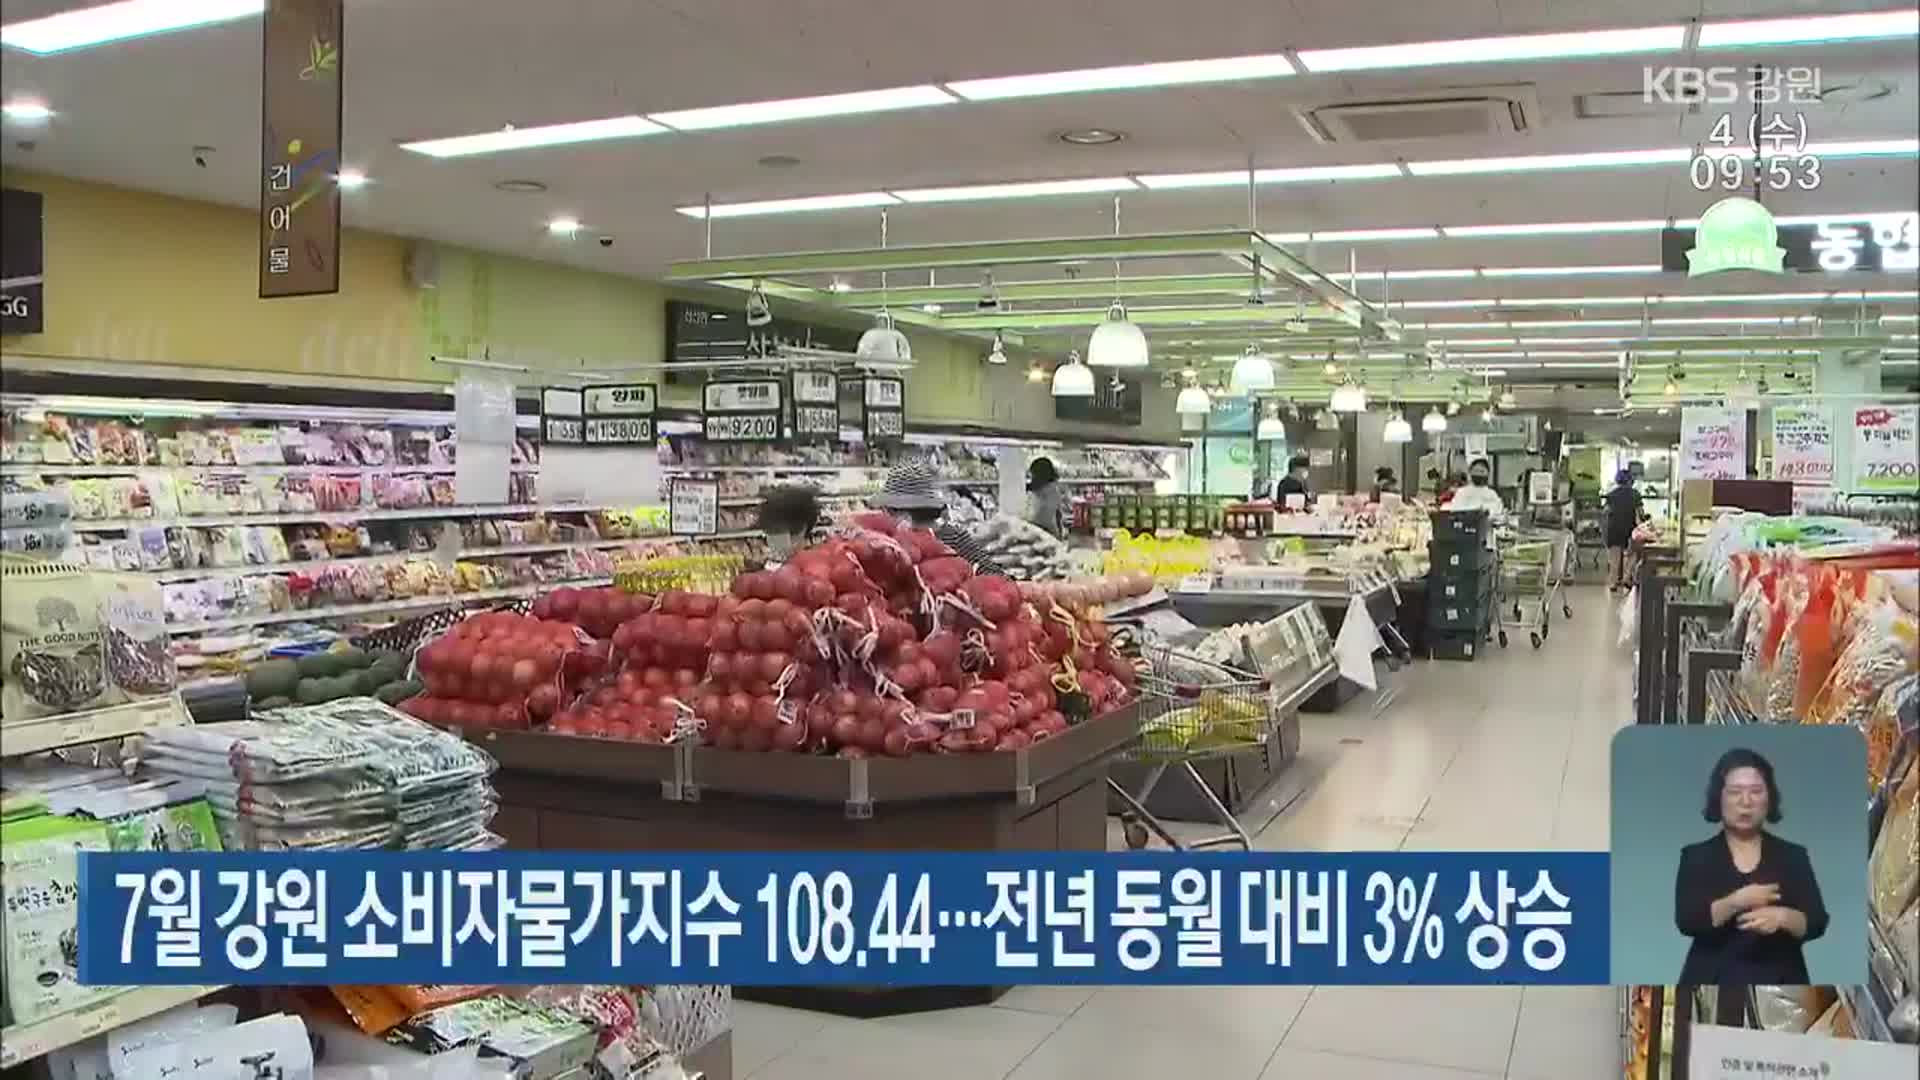 7월 강원 소비자물가지수 108.44…전년 동월 대비 3% 상승